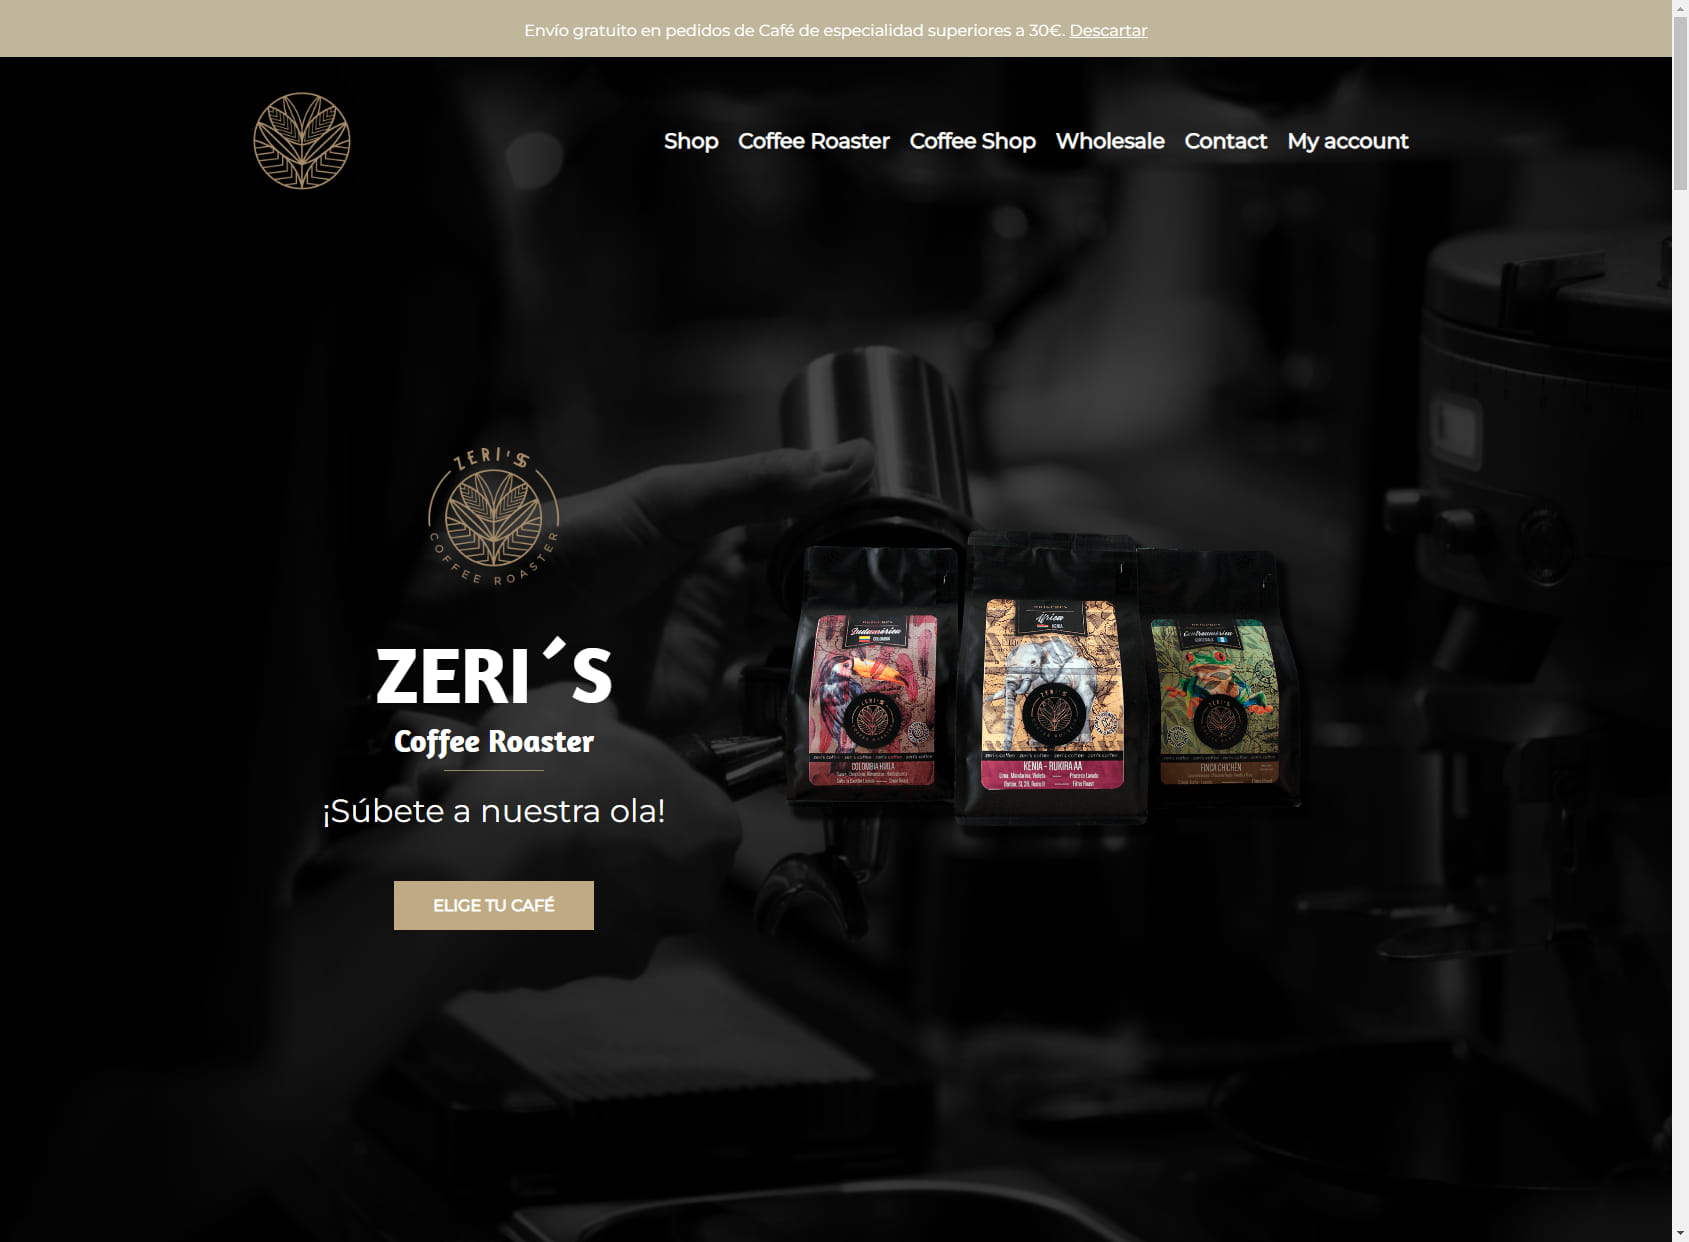 Zeri’s Specialty Coffee - Cafetería de Especialidad